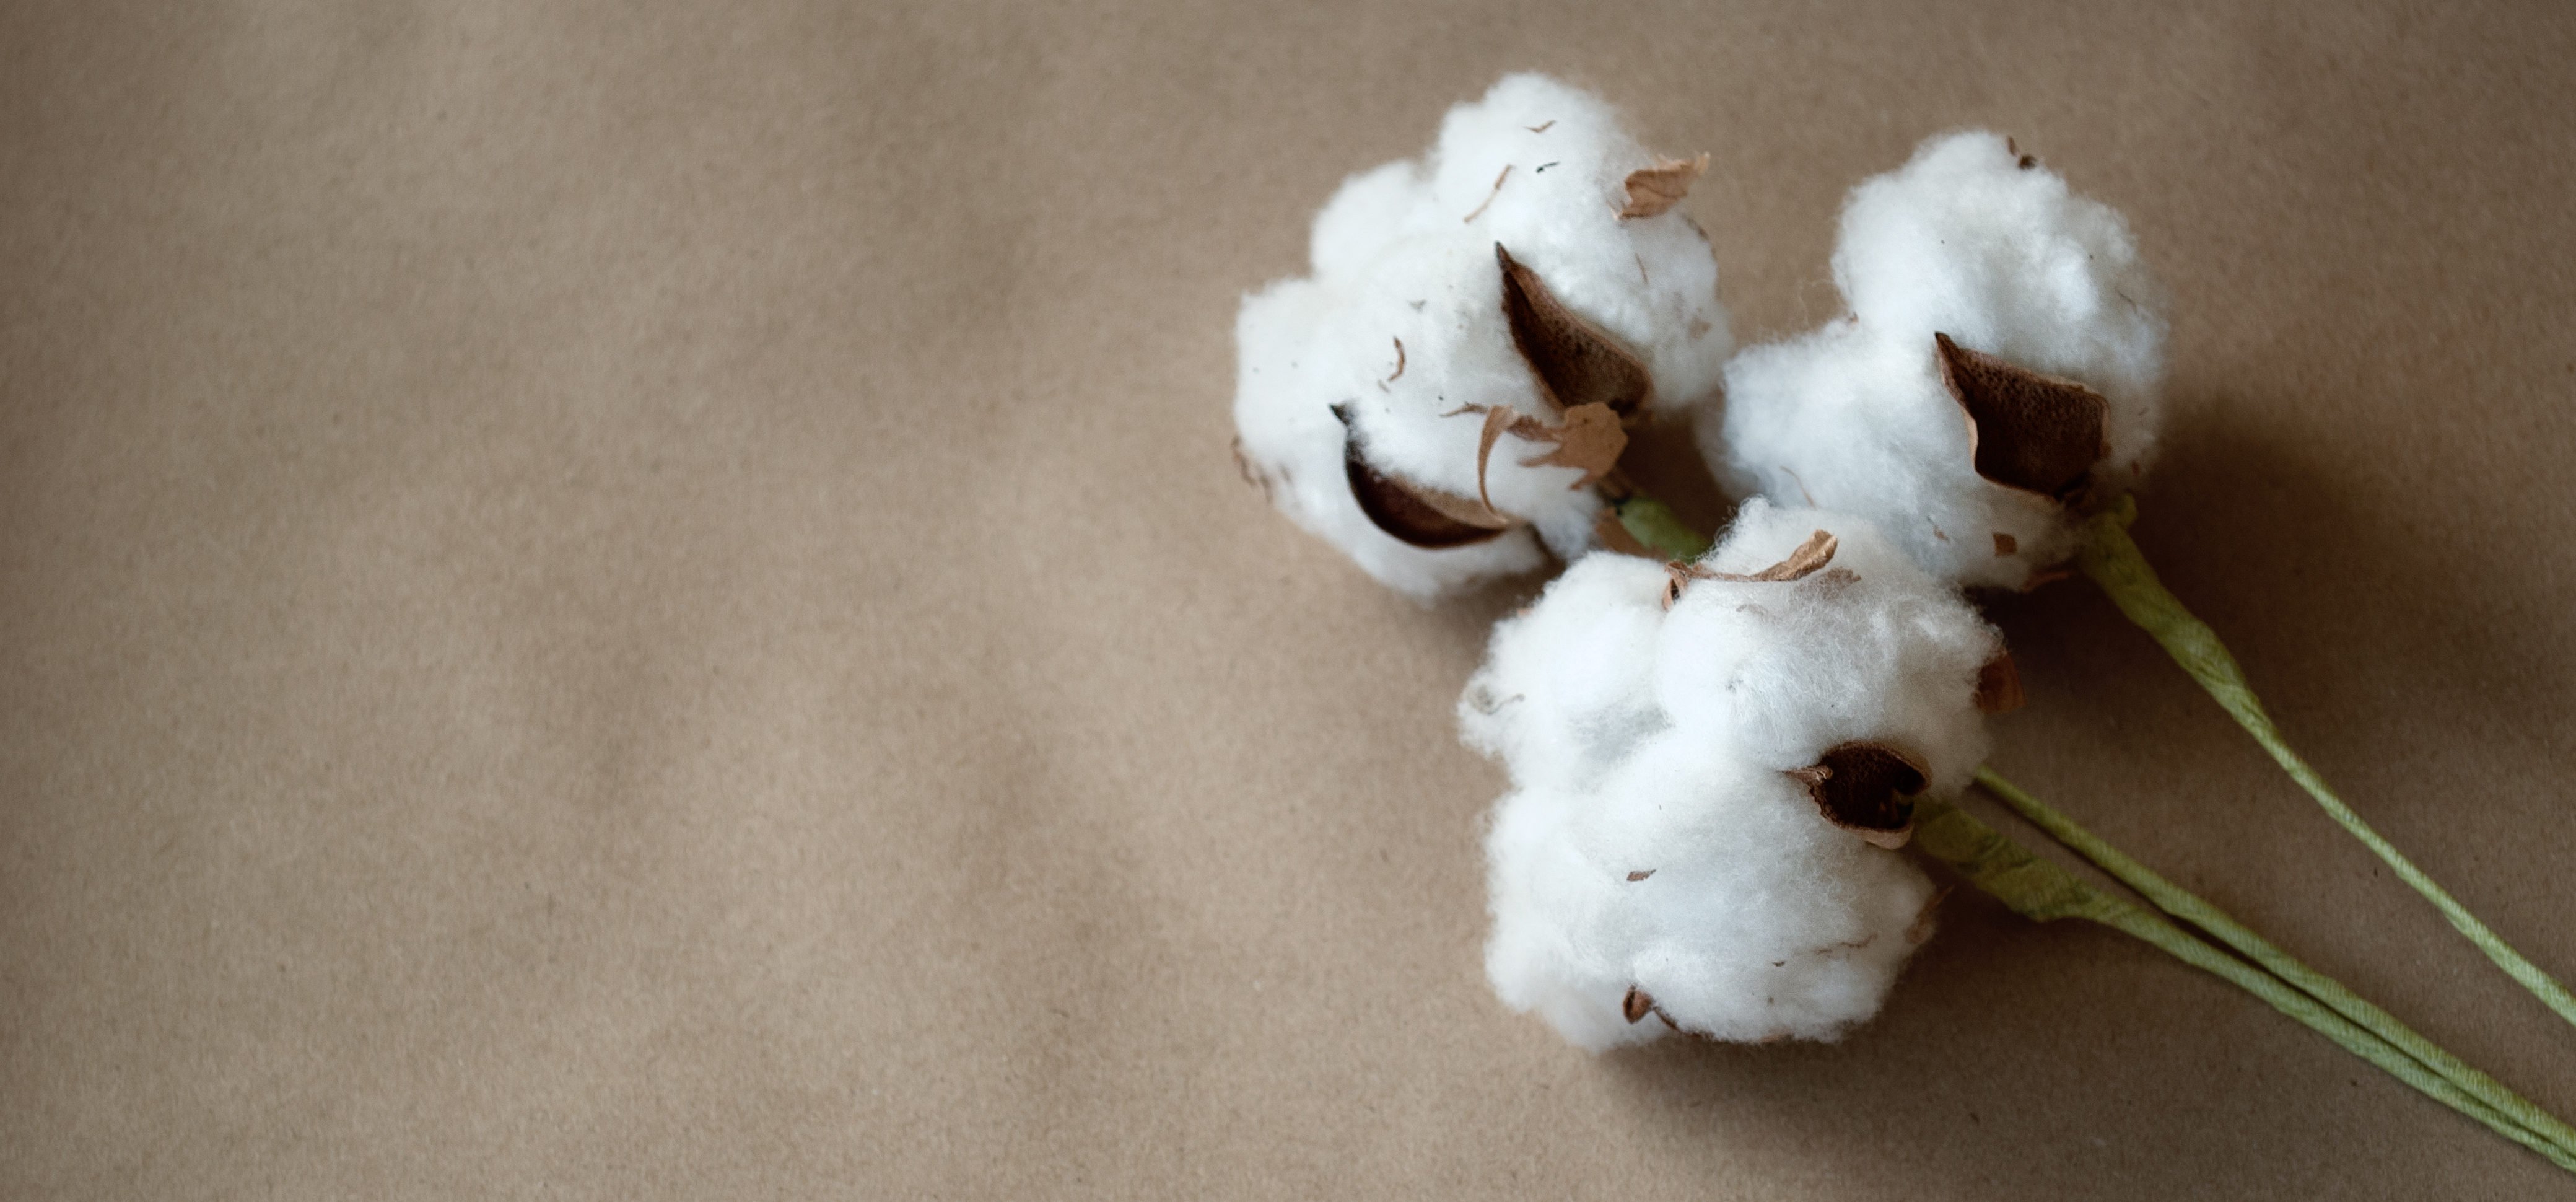 2,000+张最精彩的“Cotton”图片 · 100%免费下载 · Pexels素材图片